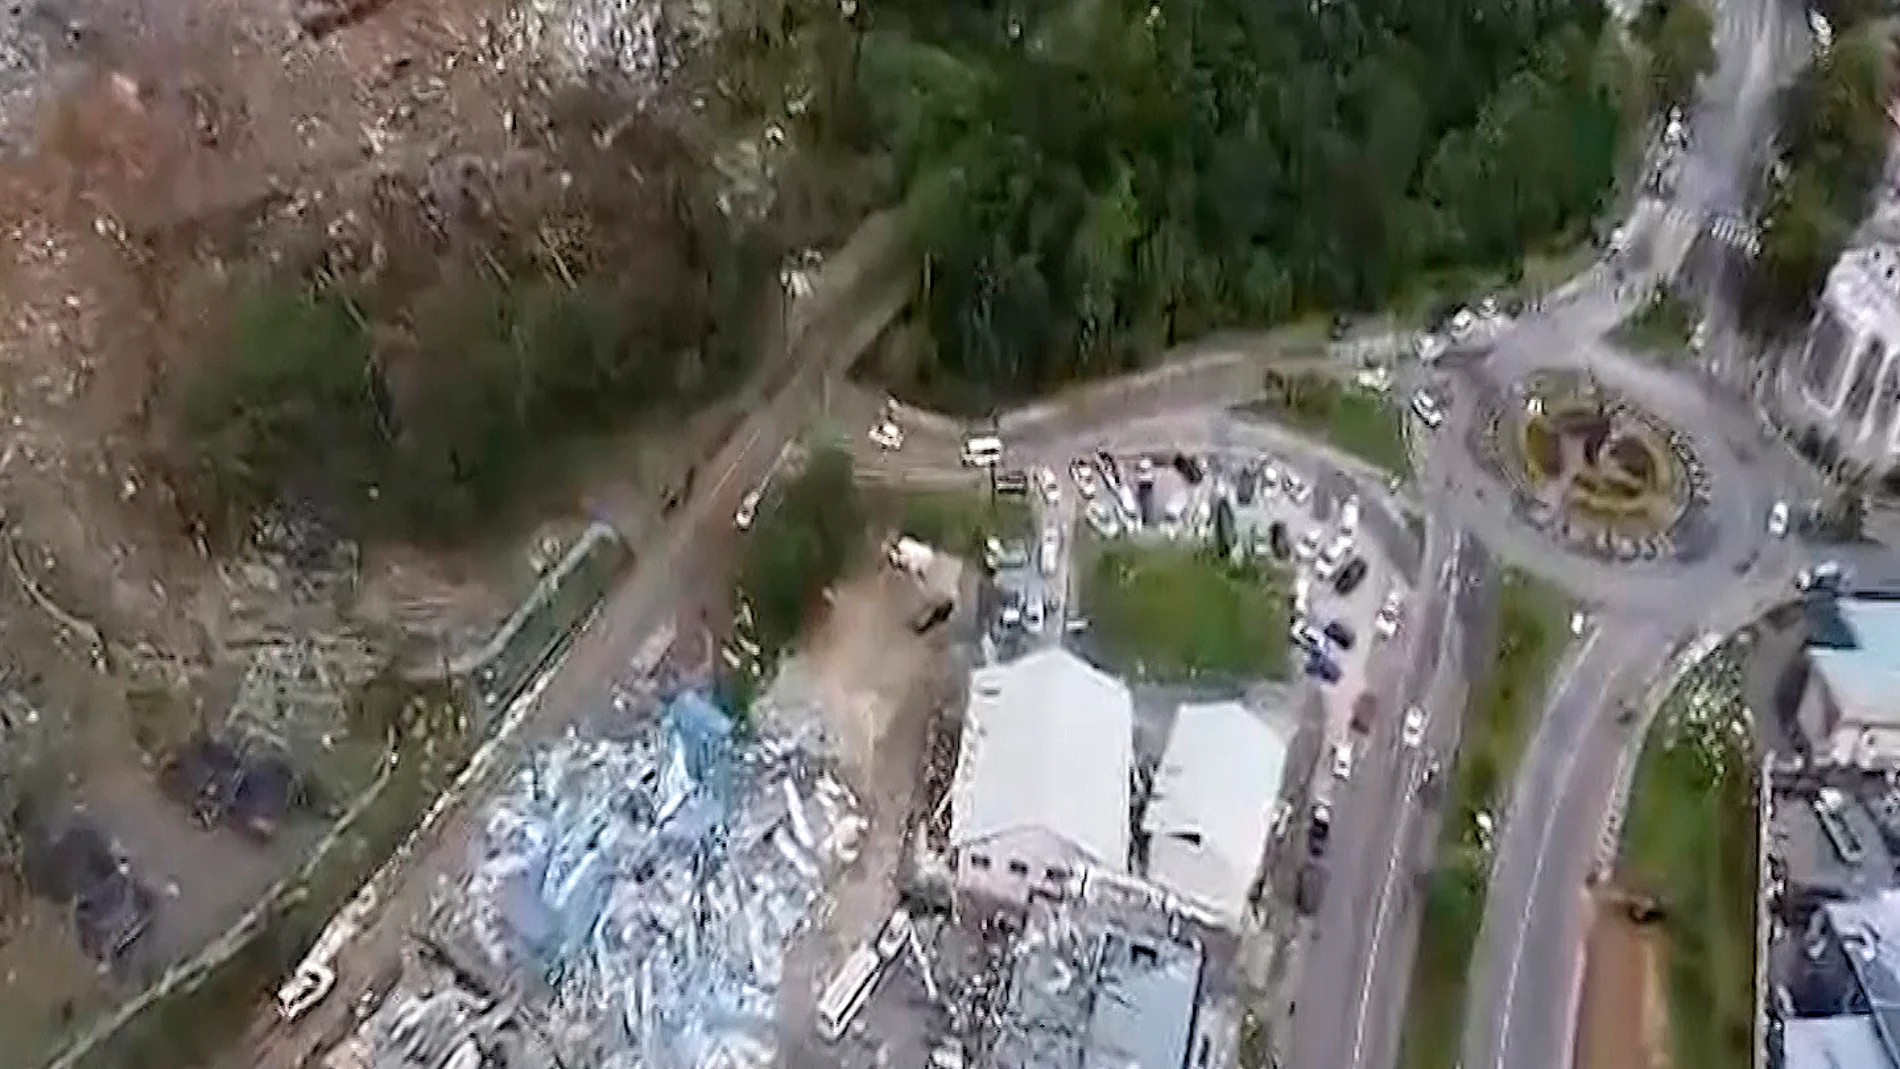 Captura de vídeo de los edificios dañados después de una explosión masiva en una zona industrial en la isla principal de Mahé, Seychelles